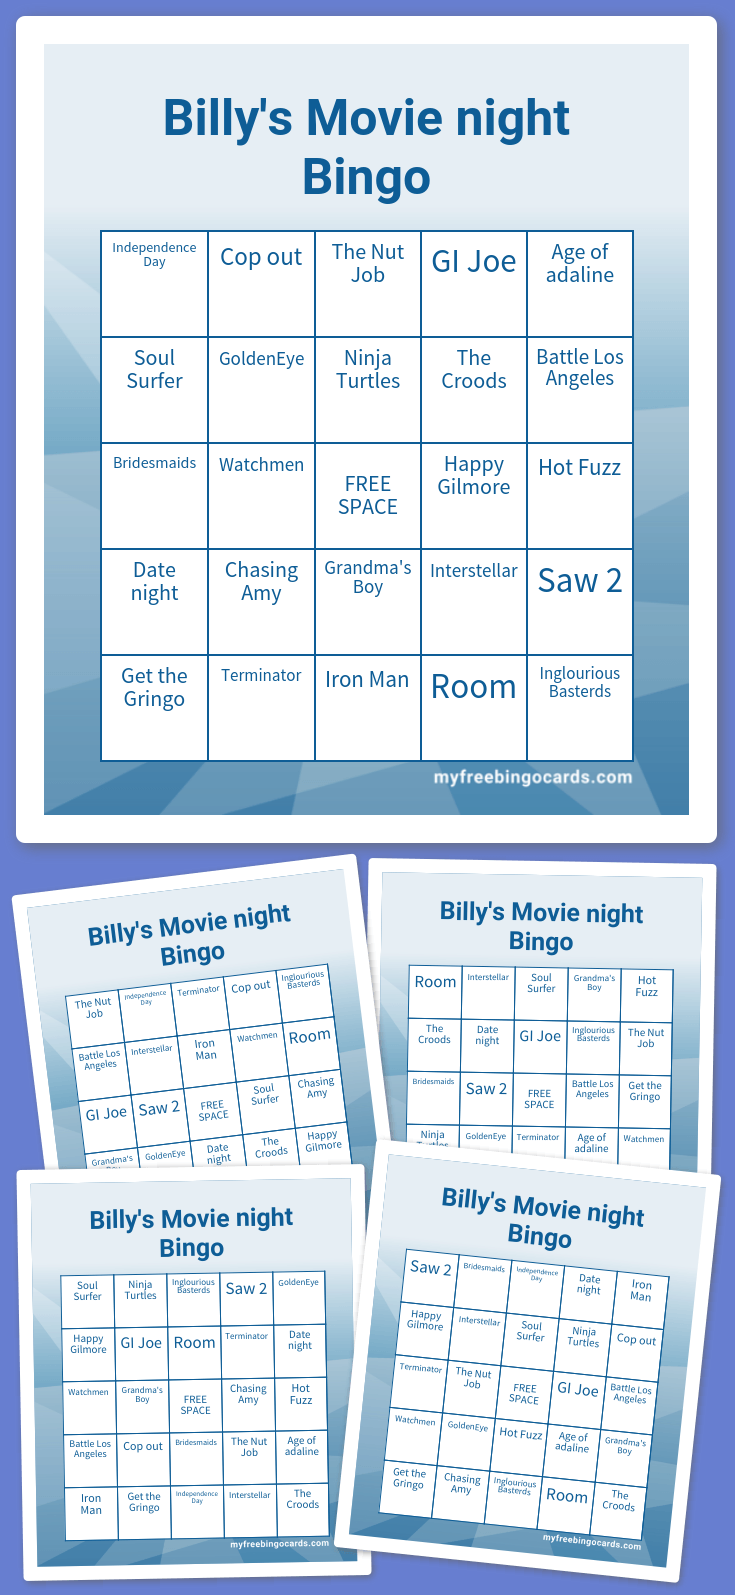 virtual-billy-s-movie-night-bingo